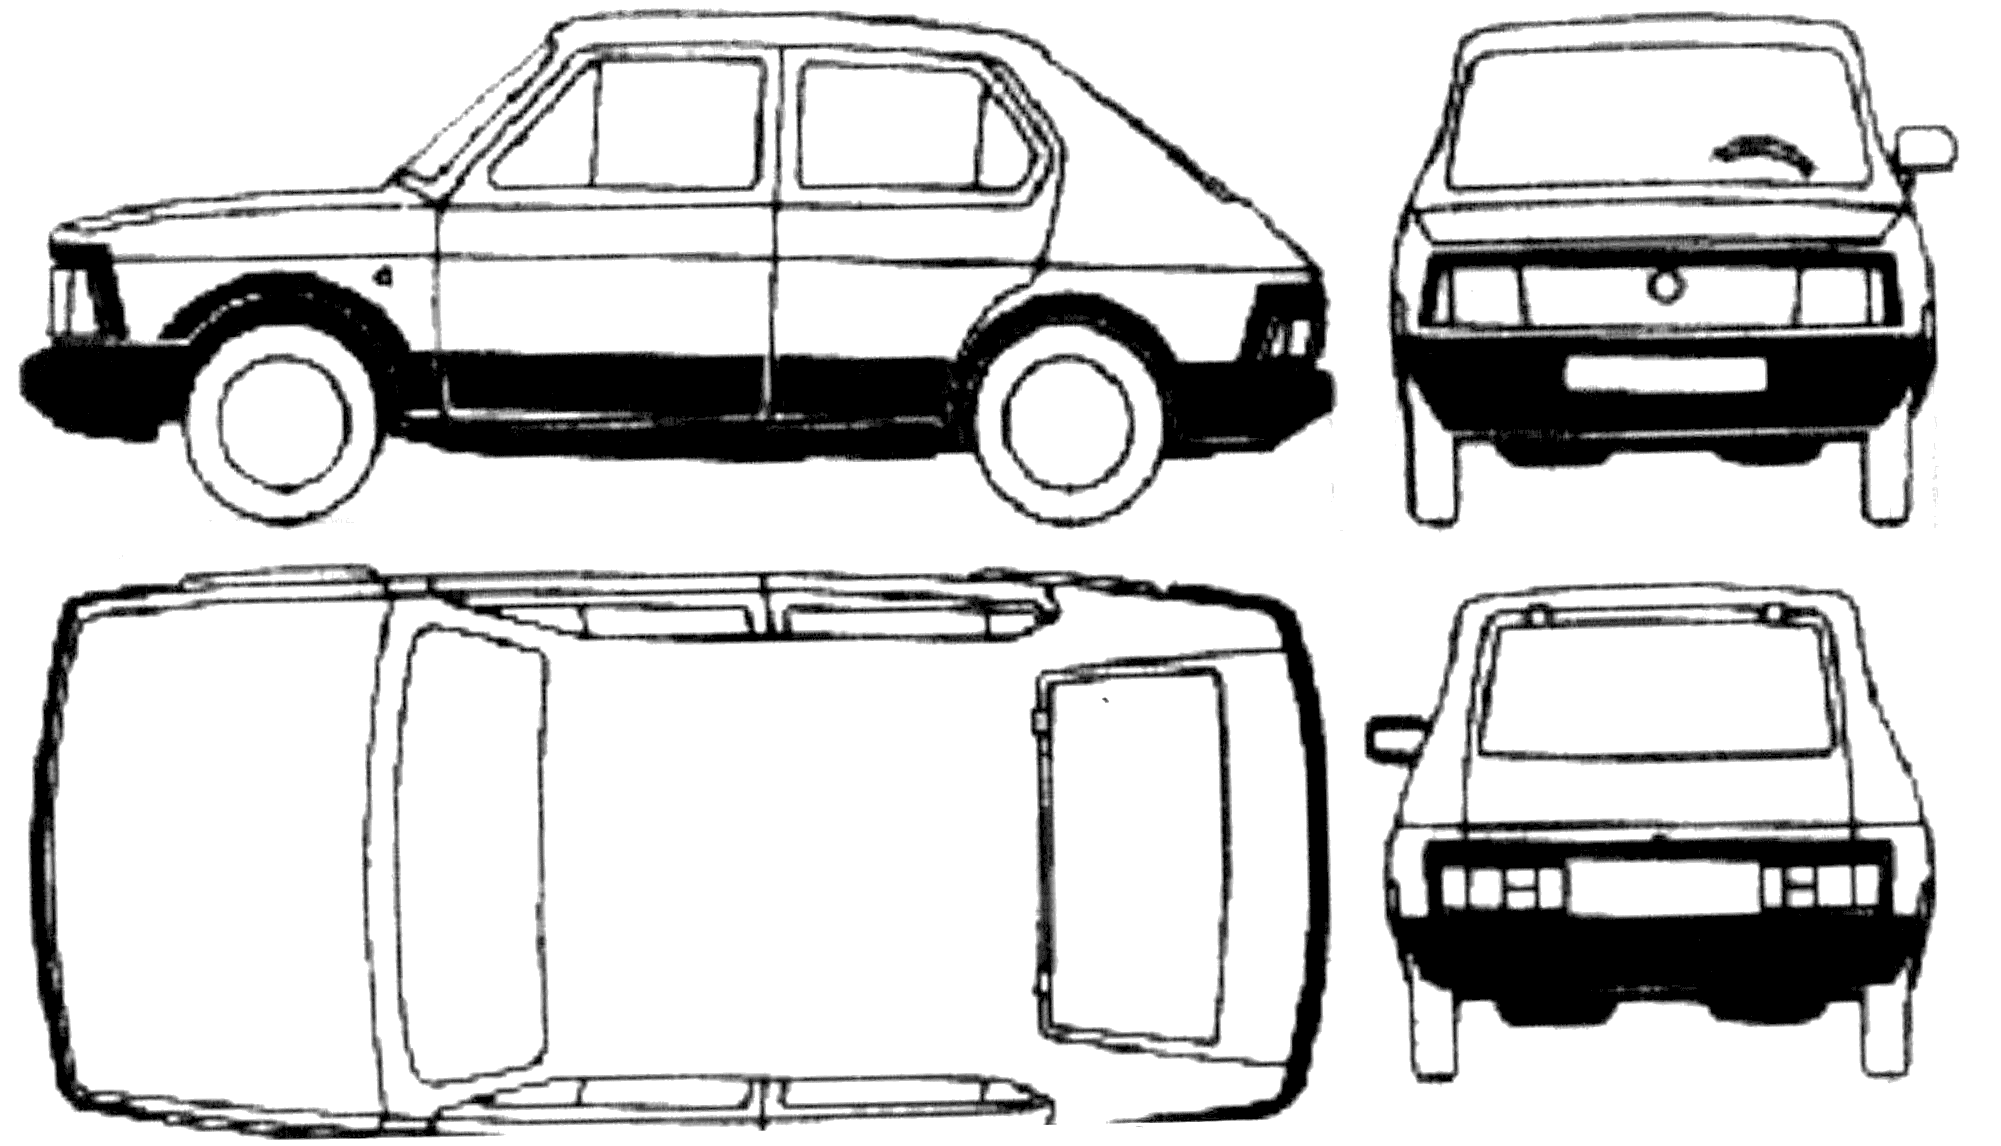 Seat Fura 5-door blueprints